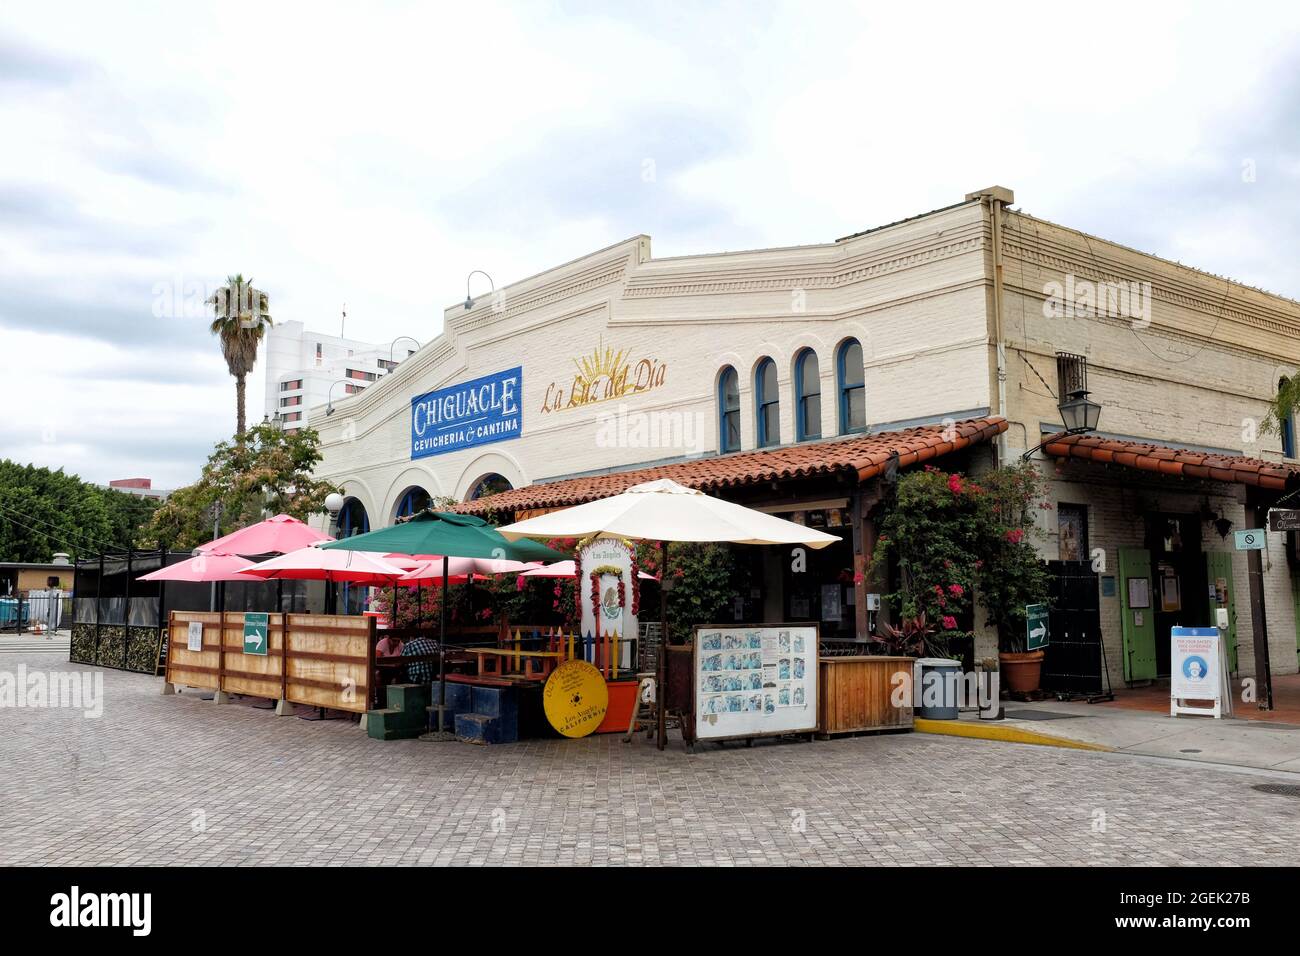 LOS ANGELES, KALIFORNIEN - 18. AUG 2021: Chiguacle Sabor Ancestral de Mexico in Los Angeles. Ein authentisches mexikanisches Restaurant im historischen Olvera Str. Stockfoto